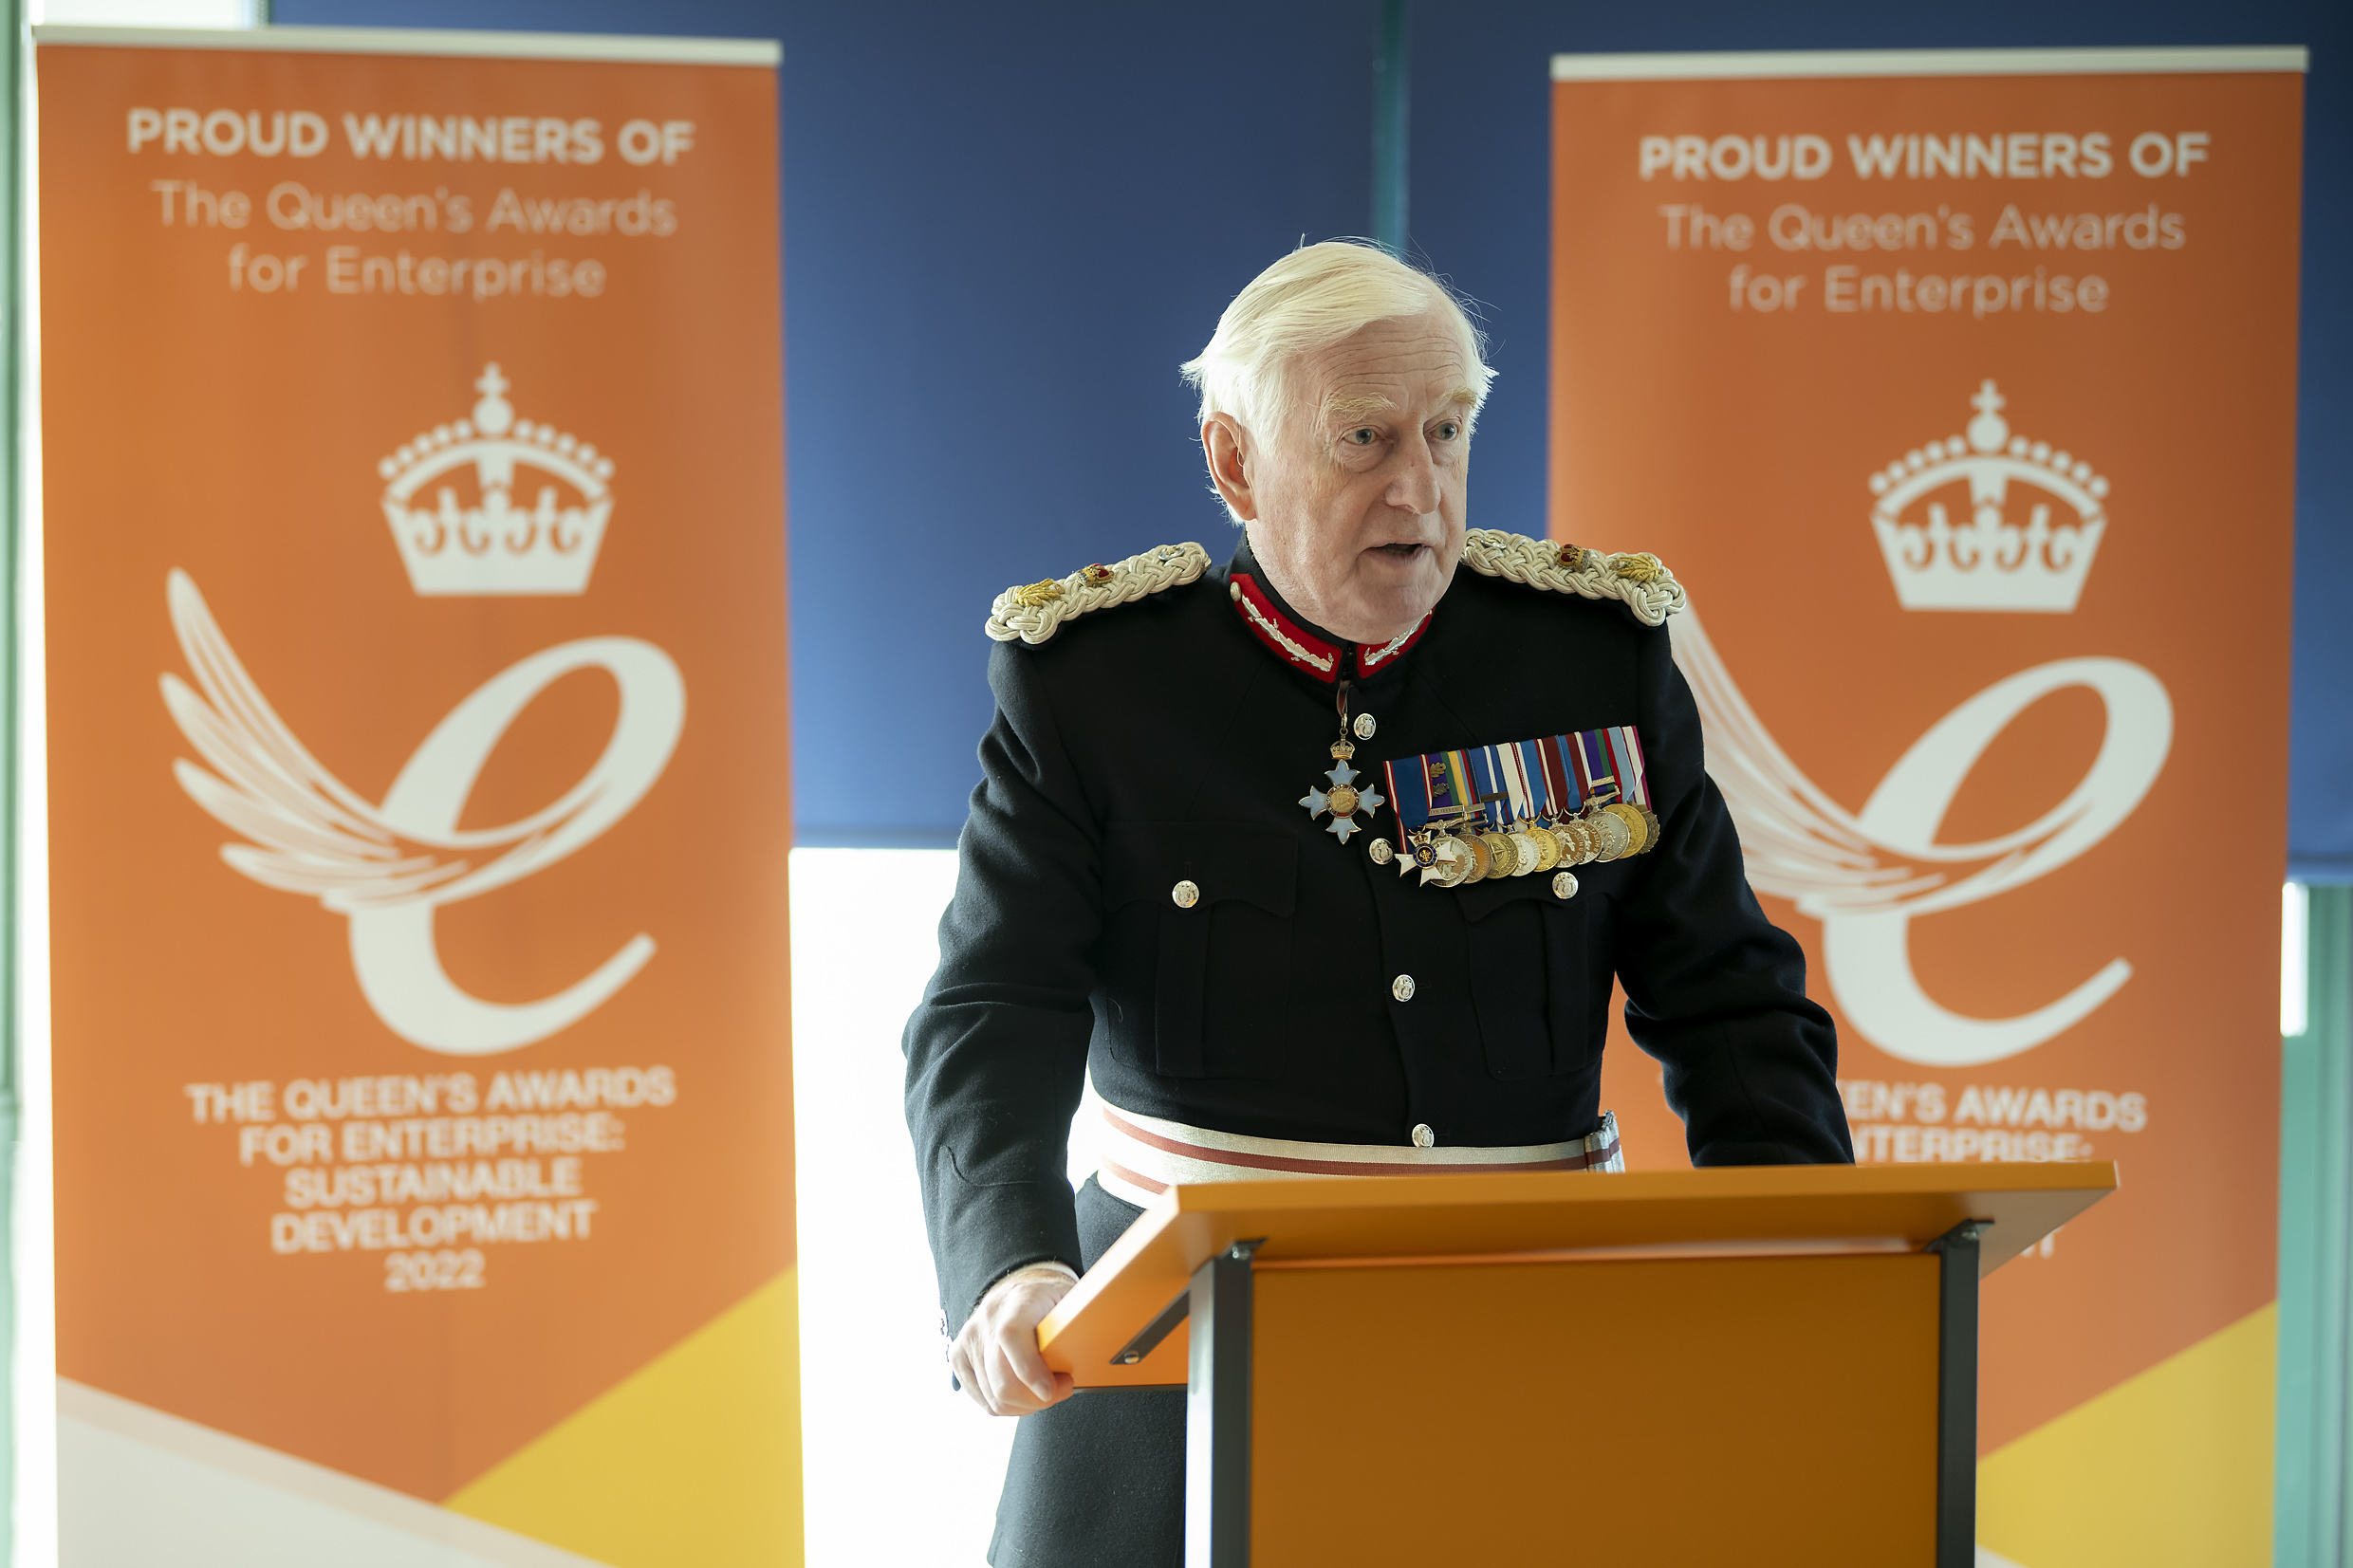 AES Solar receives The Queen’s Awards for Enterprise